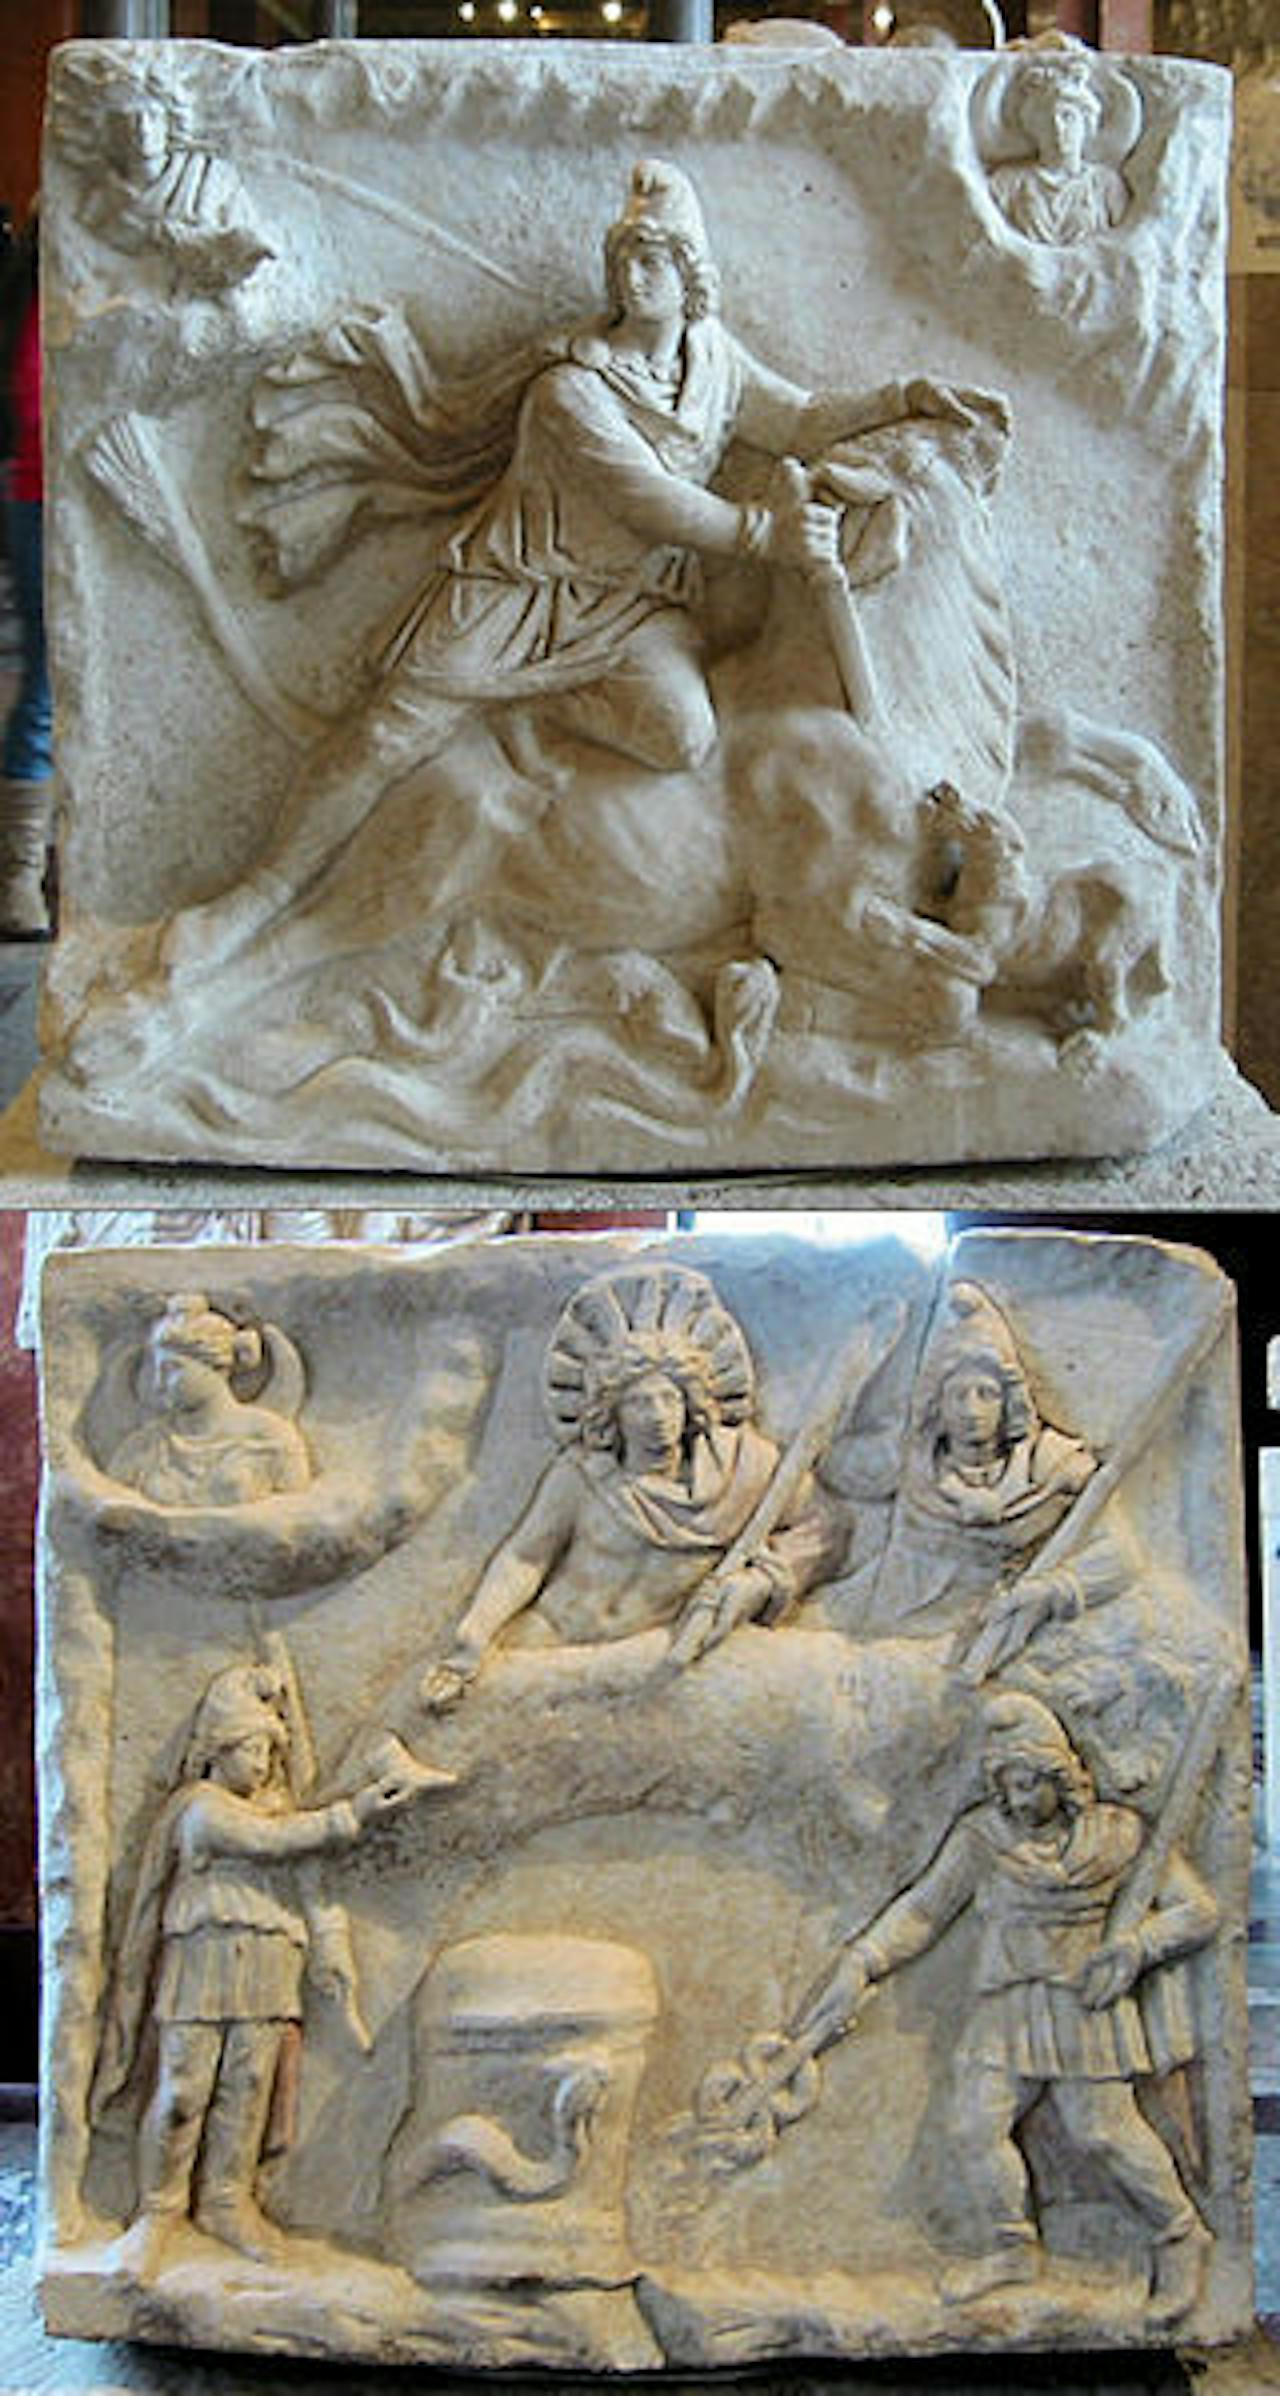 Een beeld van de tauroctonie scene. Mithras doodt de stier. Het tweede beeld op de foto laat het feestmaal zien.